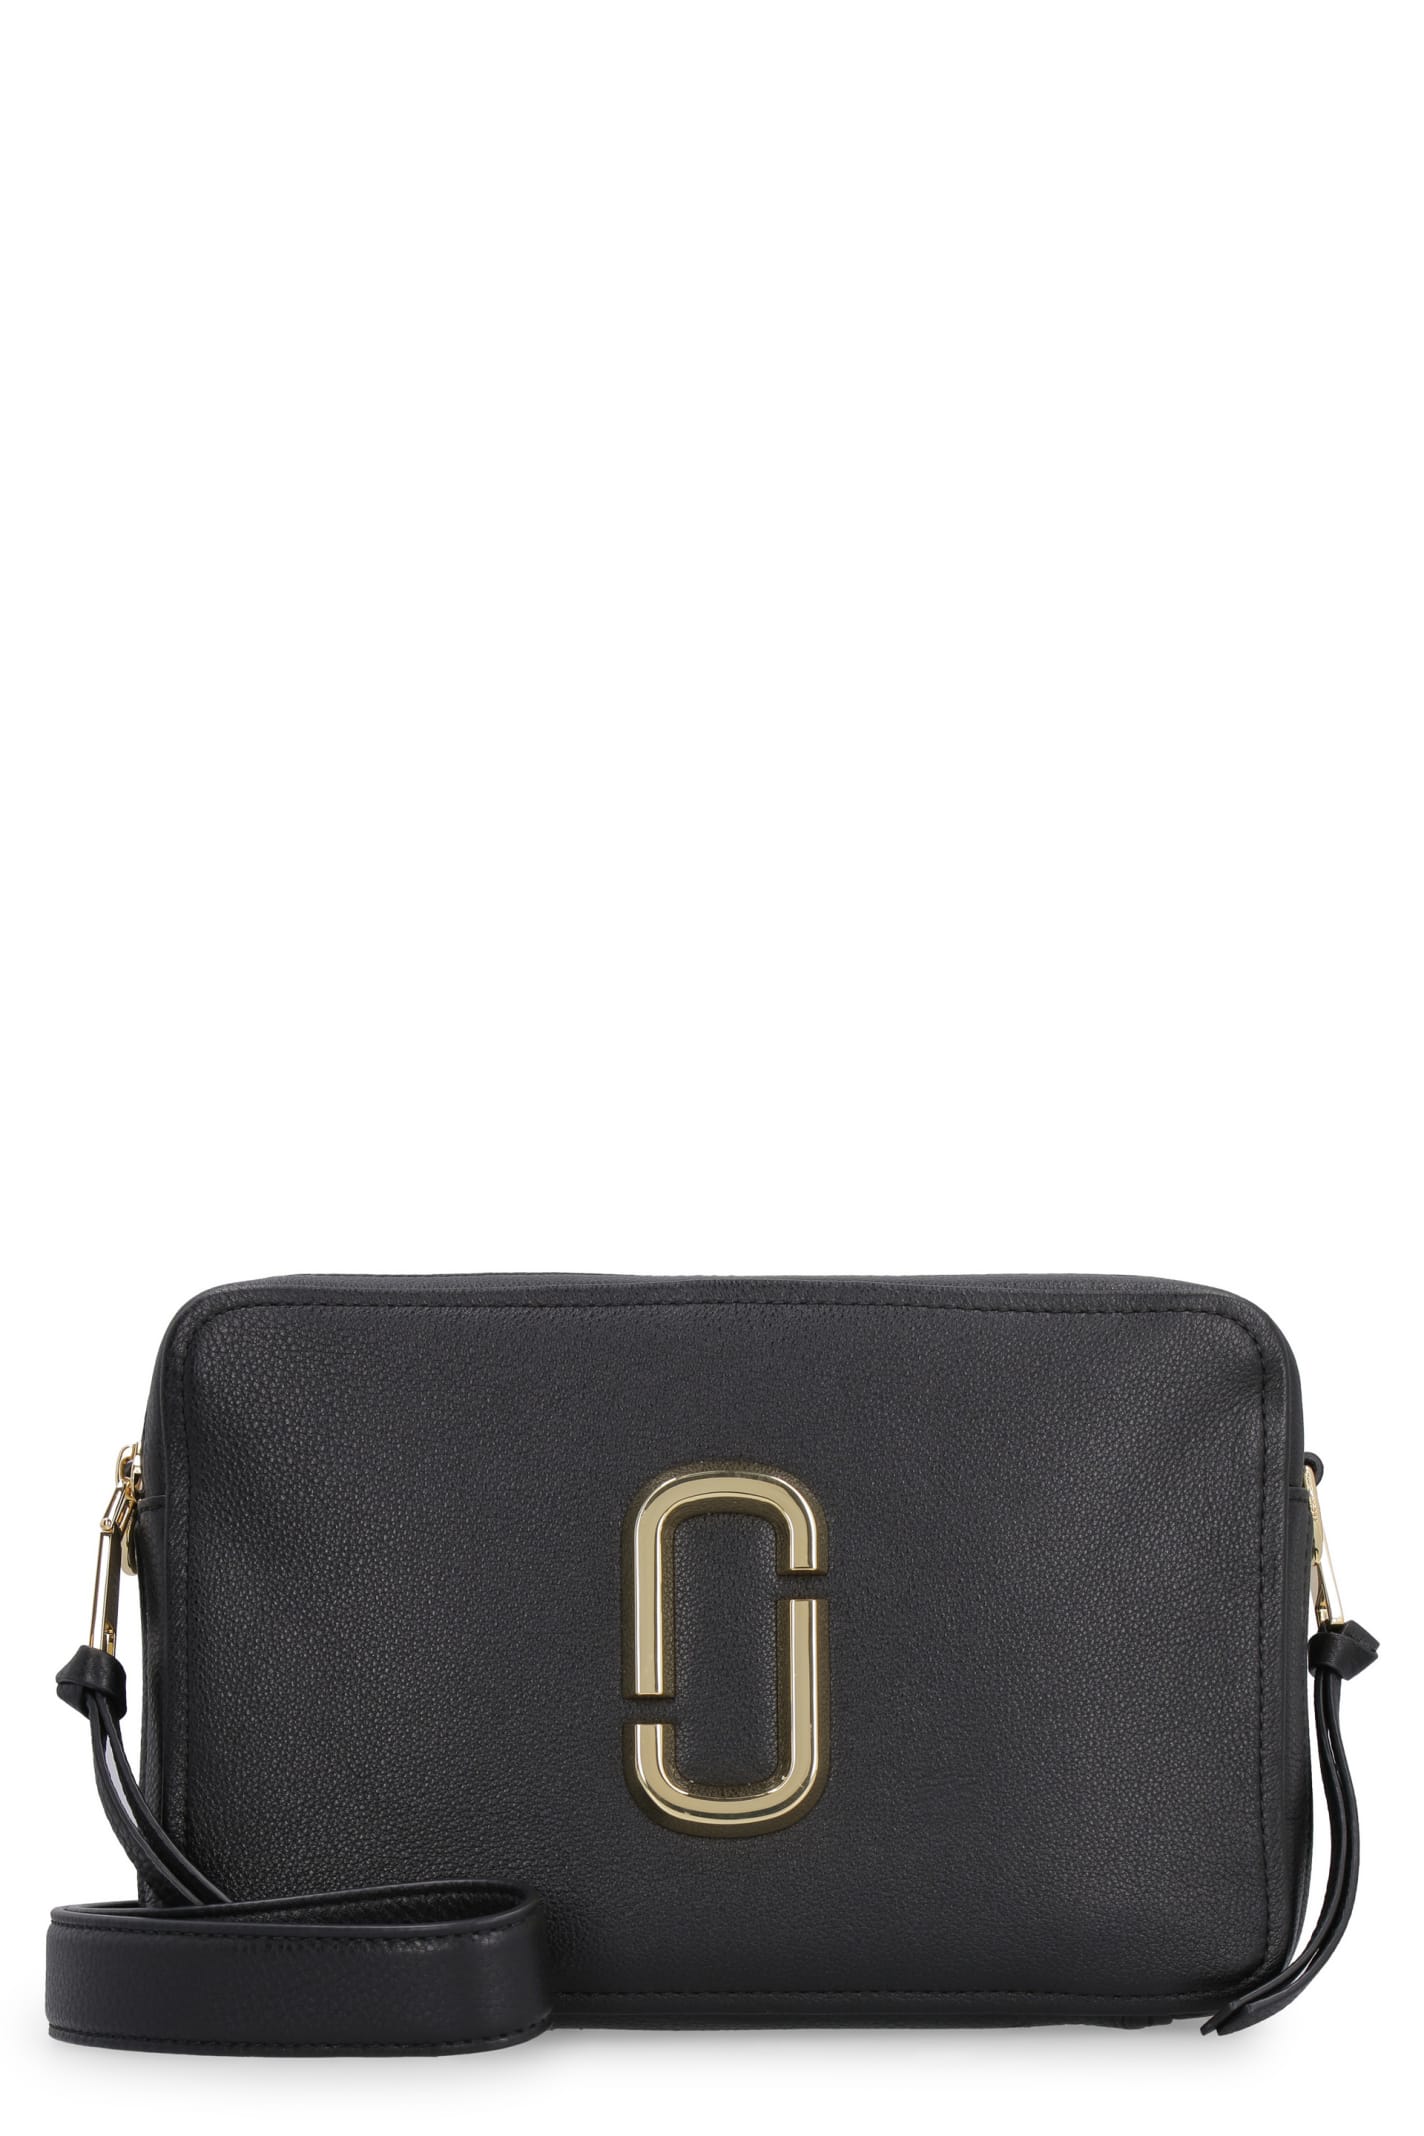 Marc Jacobs Softshot 27 Leather Shoulder Bag In Black